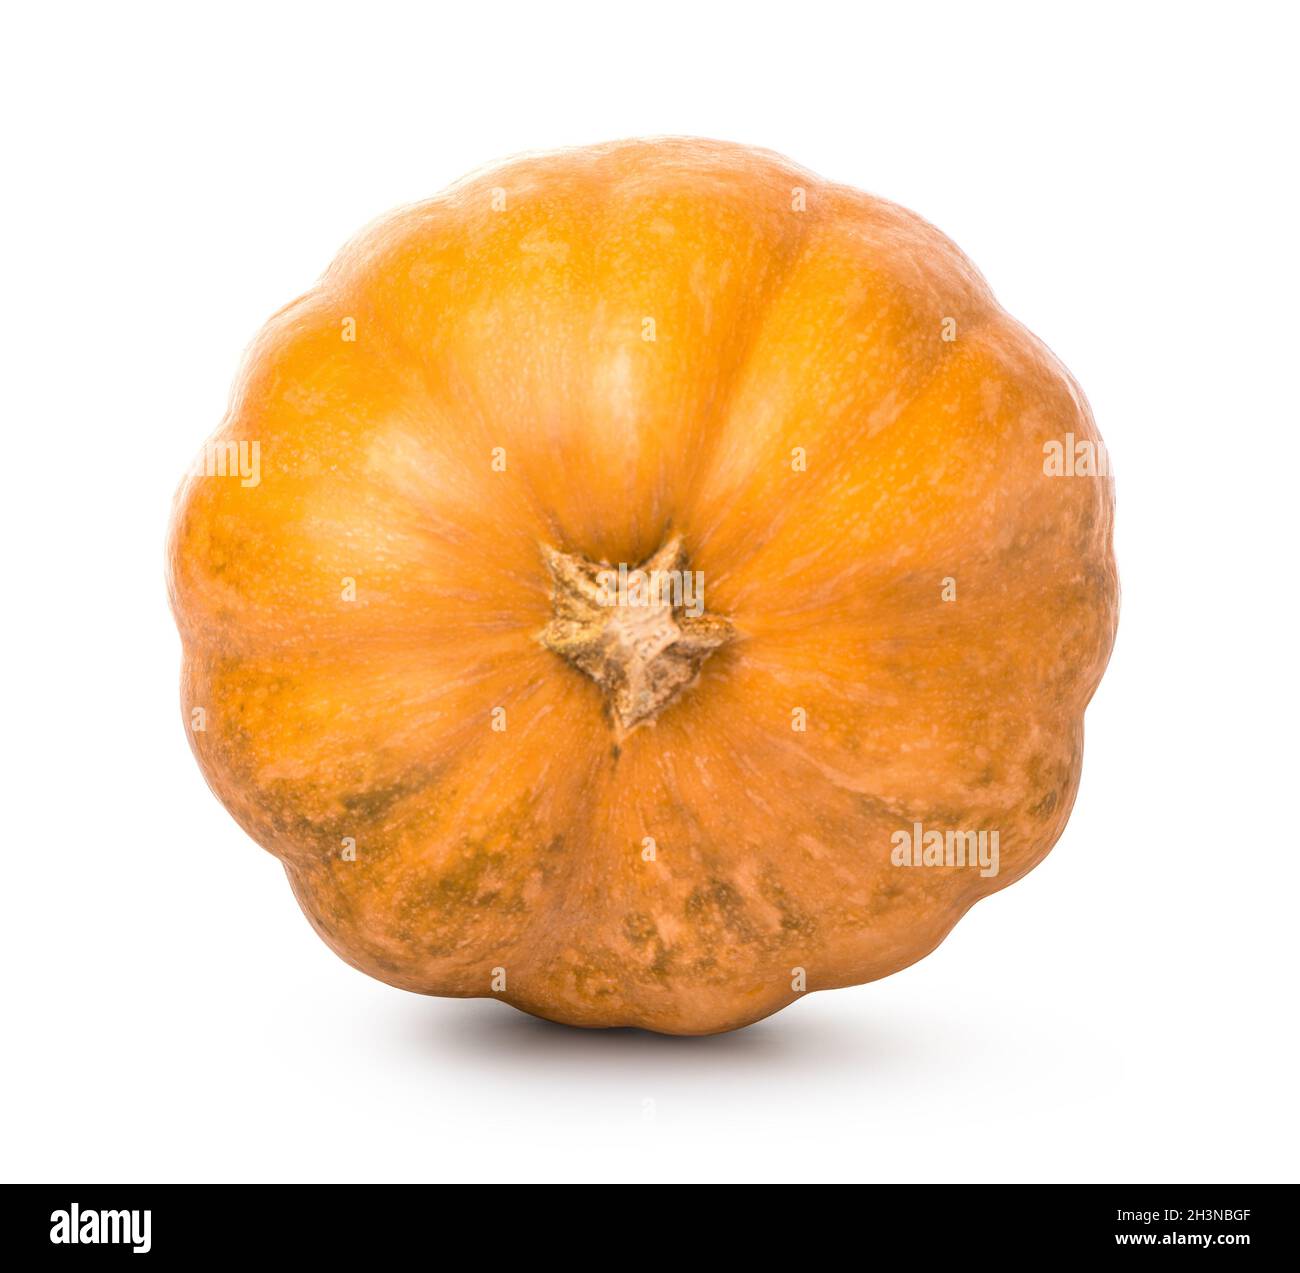 Orange round pumpkin Stock Photo